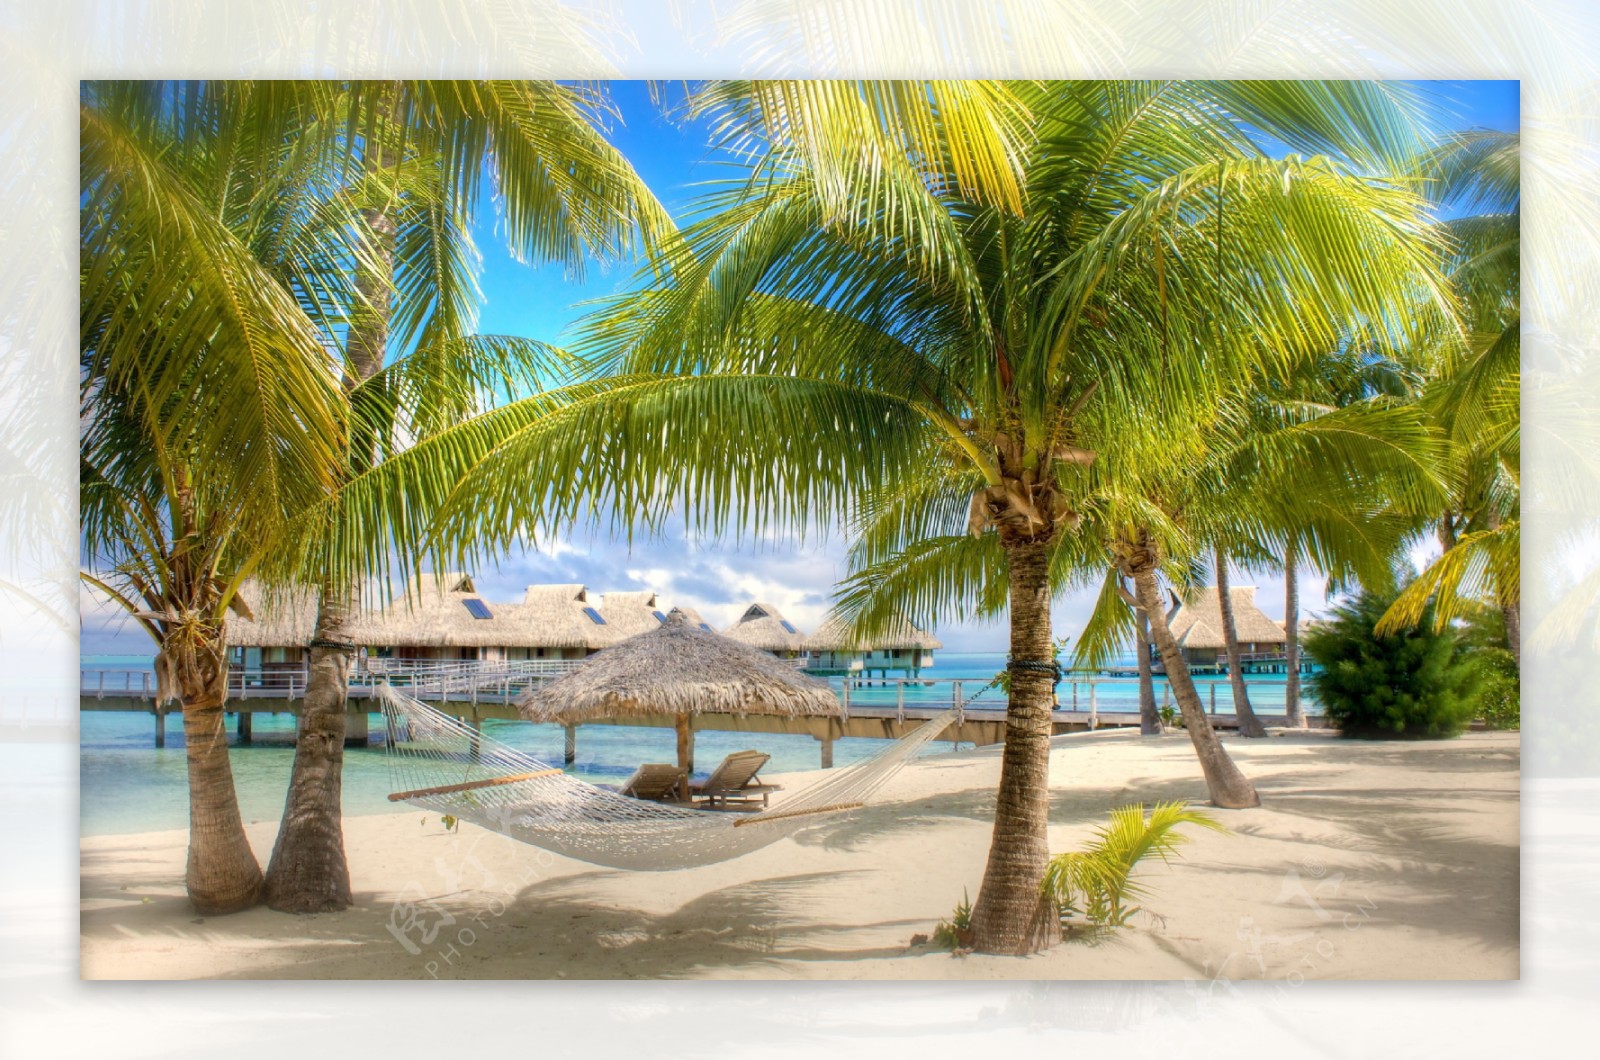 沙滩椰子树风景图片